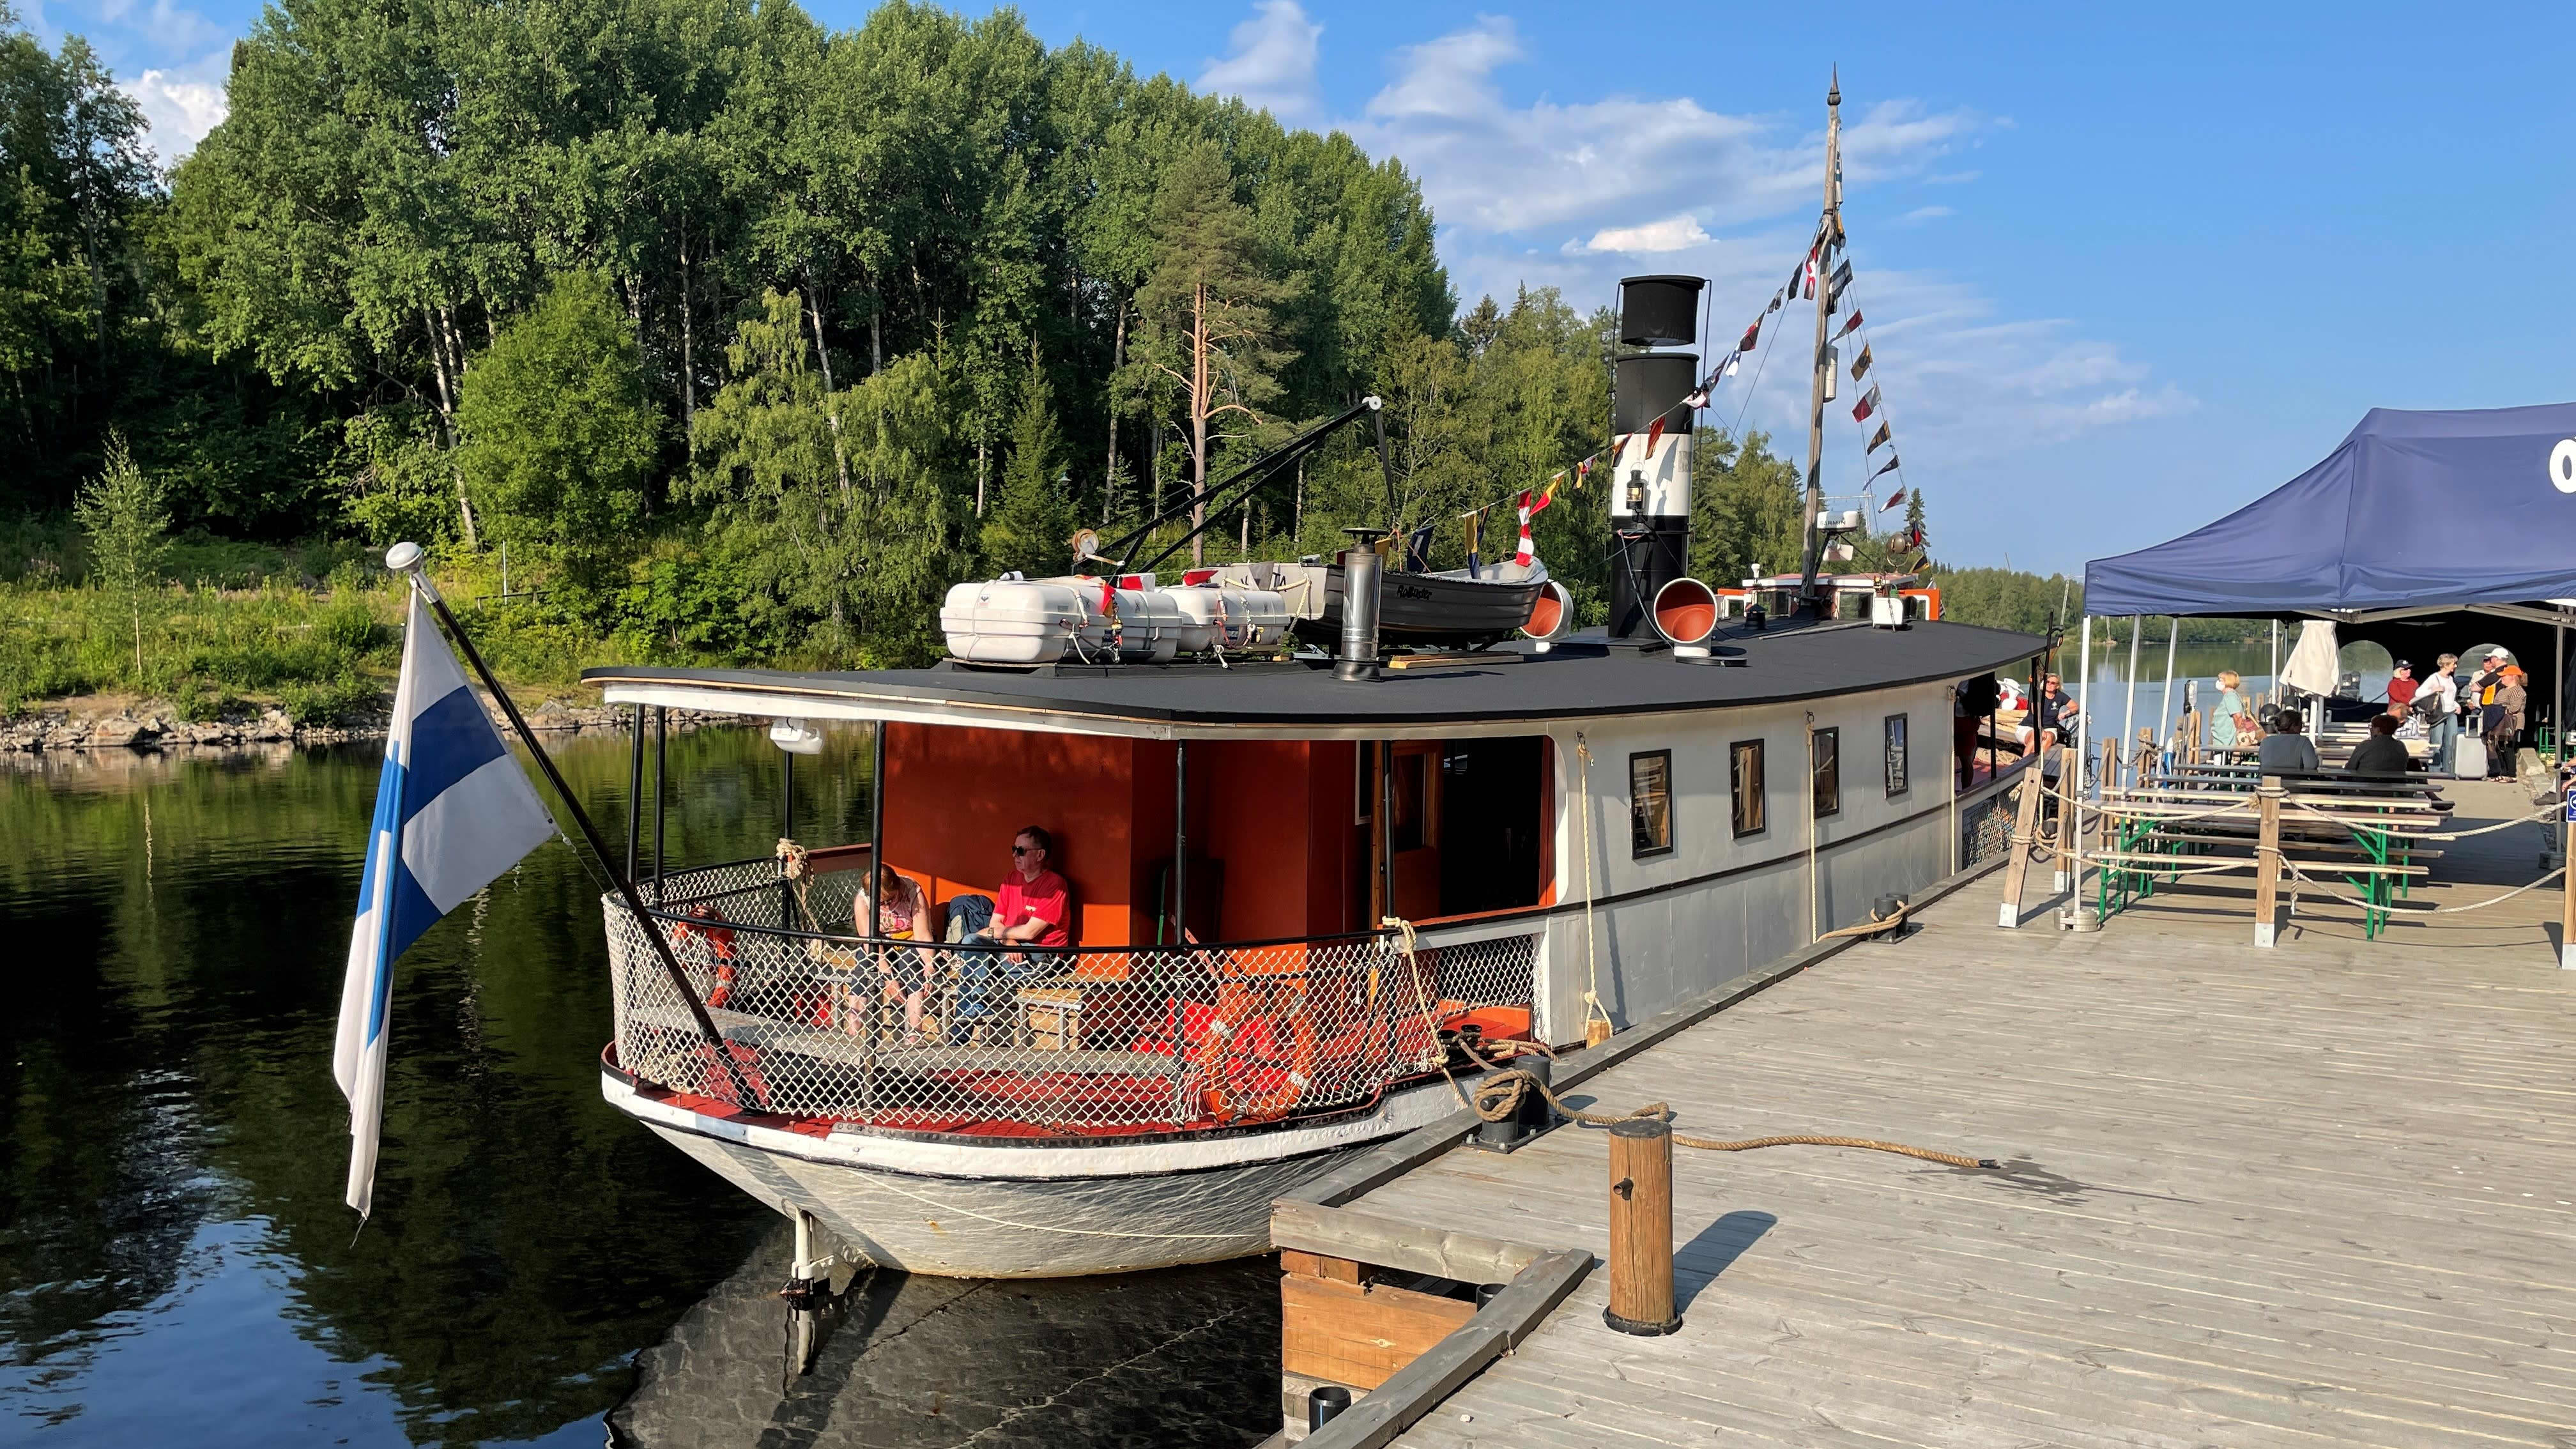 S/S Kouta odottaa matkustajia aluksen 100-vuotisristeilylle Kajaanin Kalkkisillalla.